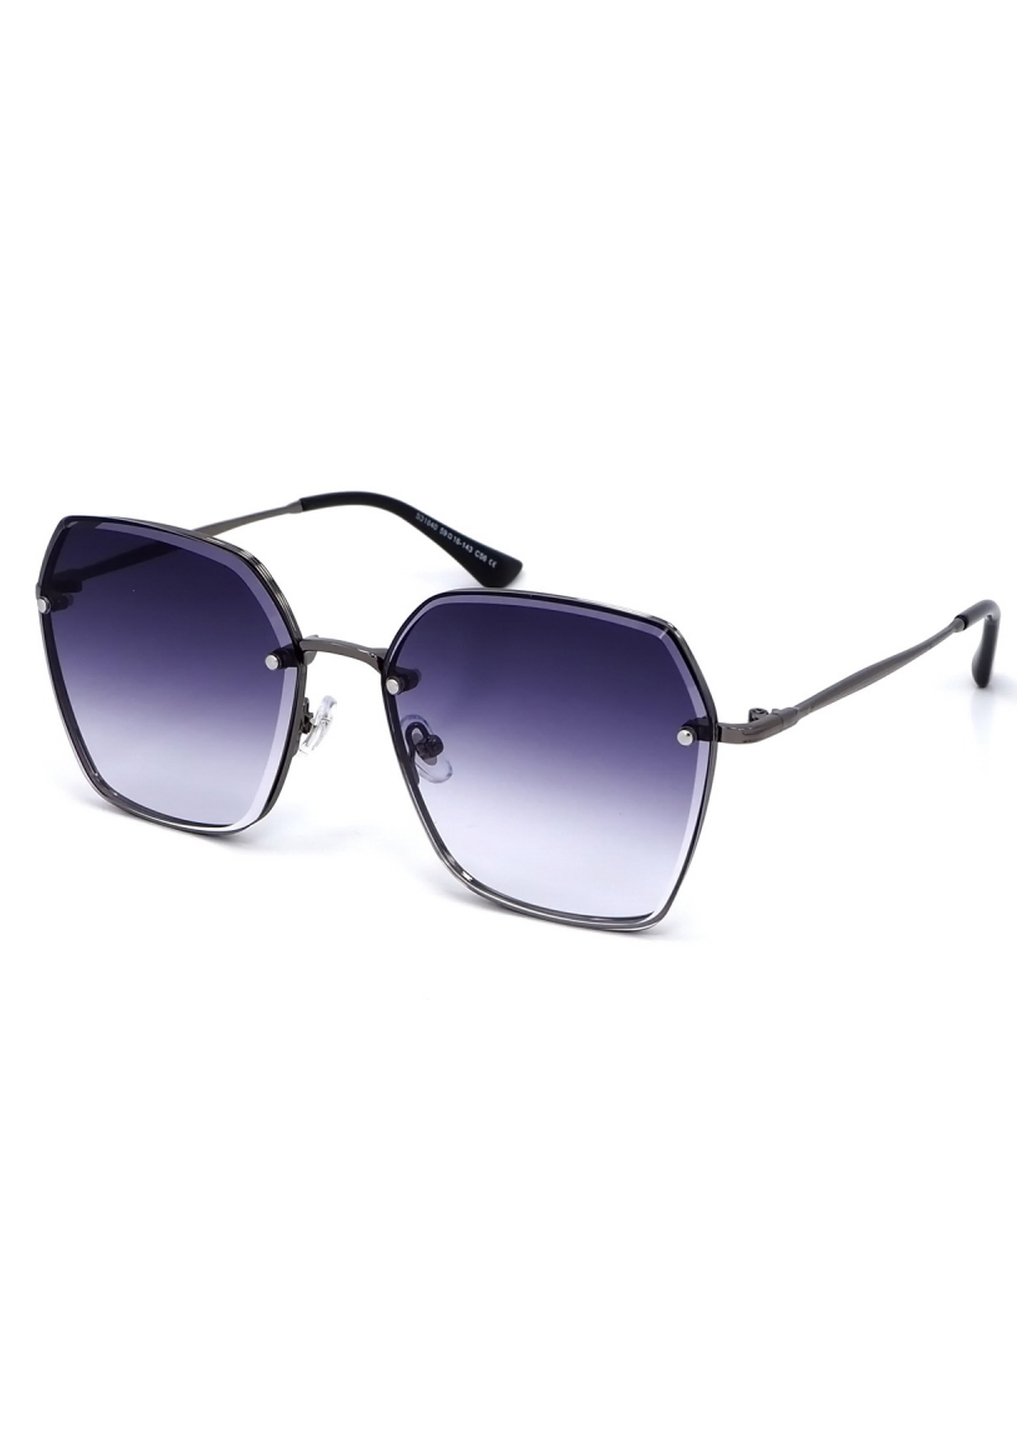 Купить Женские солнцезащитные очки Merlini с поляризацией S31840 117111 - Золотистый в интернет-магазине